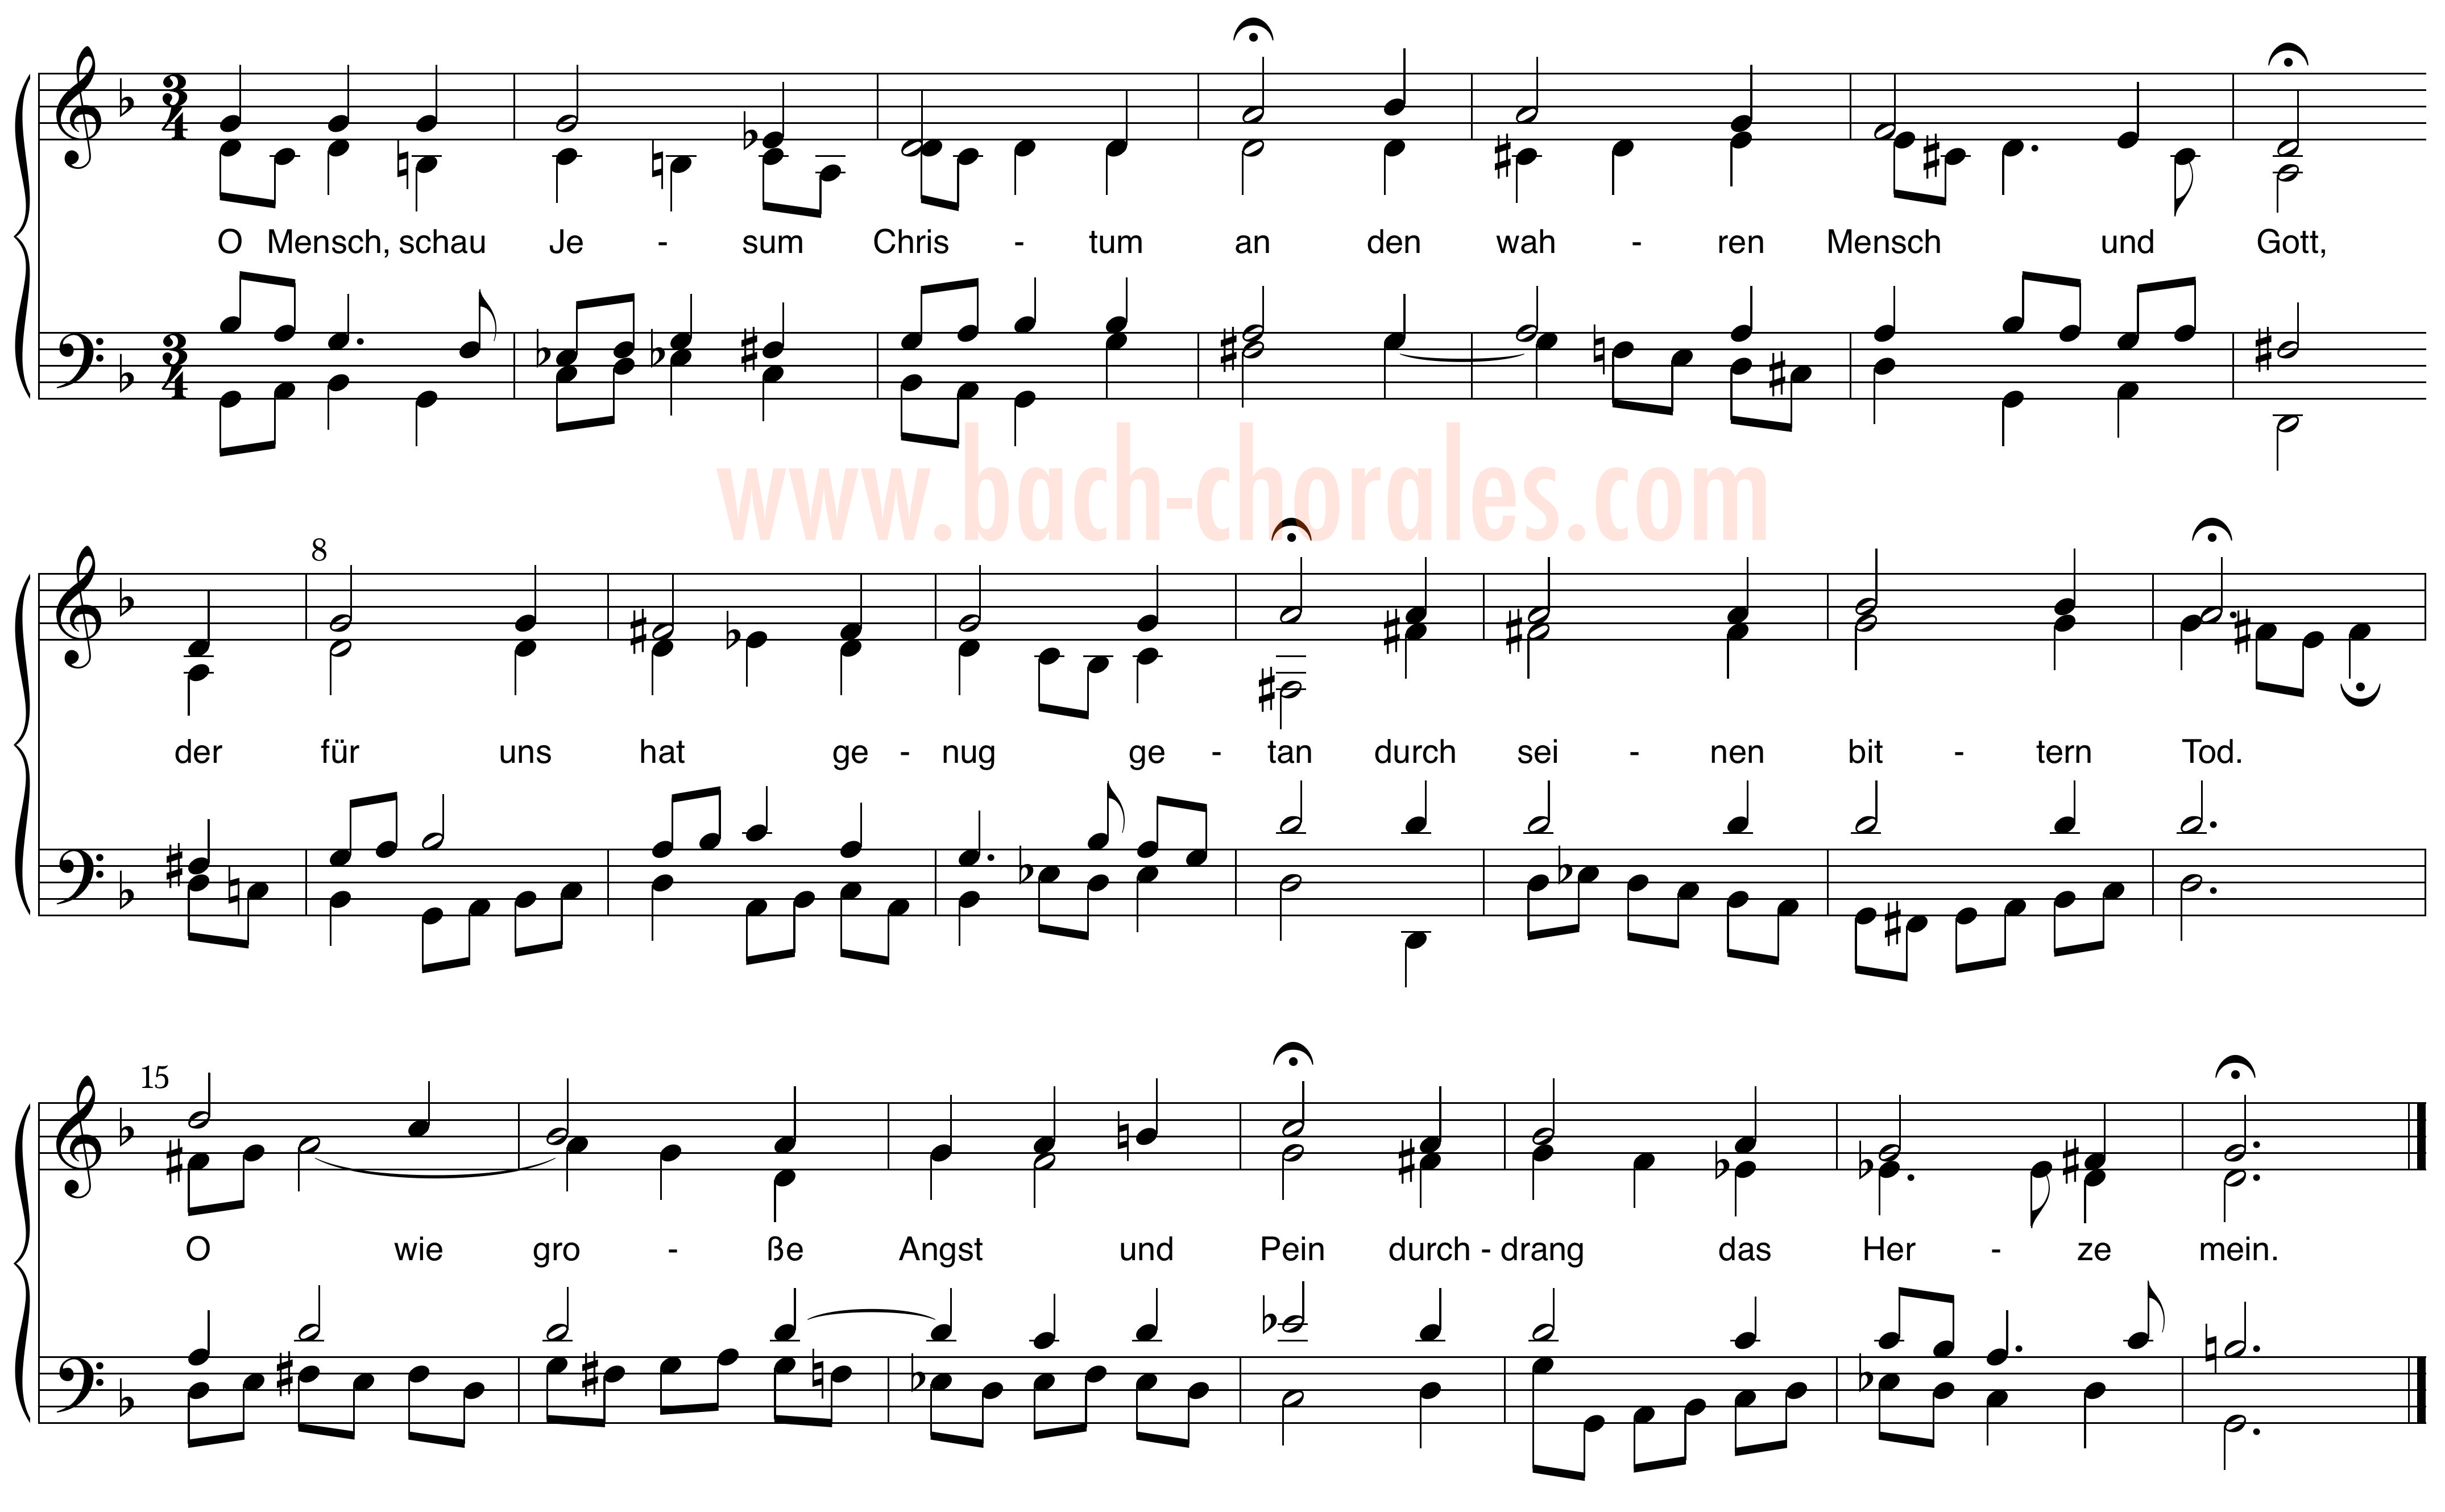 notenbeeld BWV 403 op https://www.bach-chorales.com/